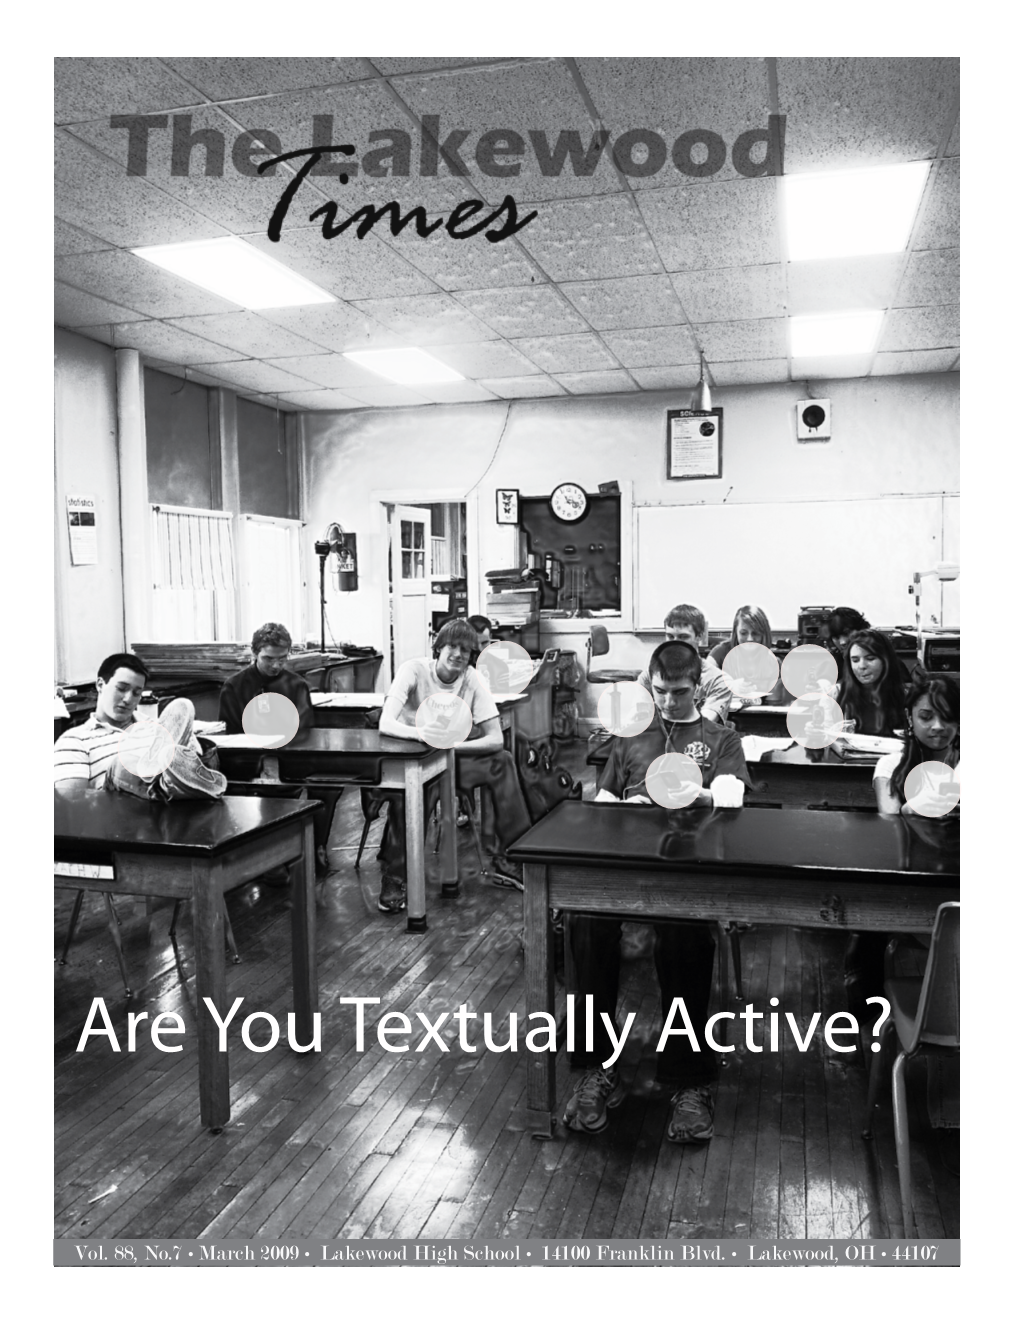 Are You Textually Active?